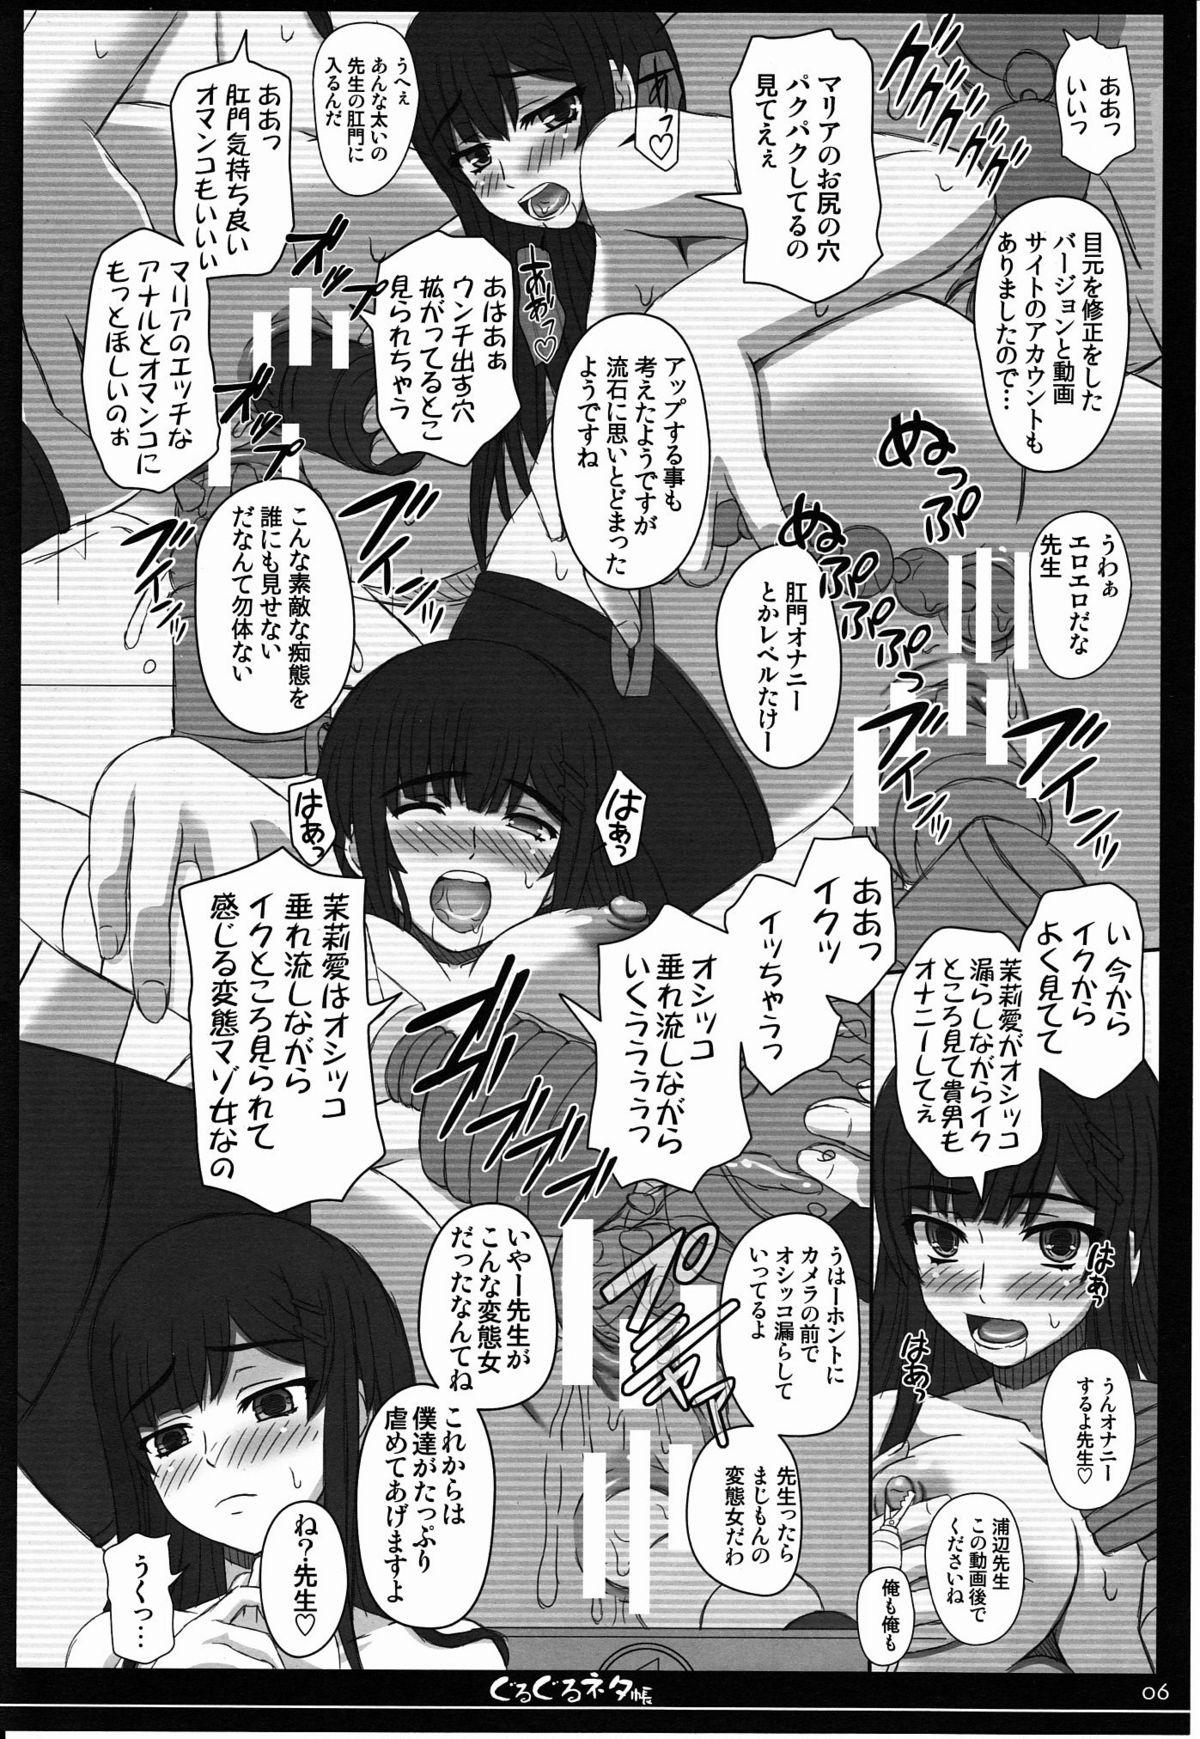 Putas Shiawase no Katachi no Guruguru Netachou 80 Spank - Page 5